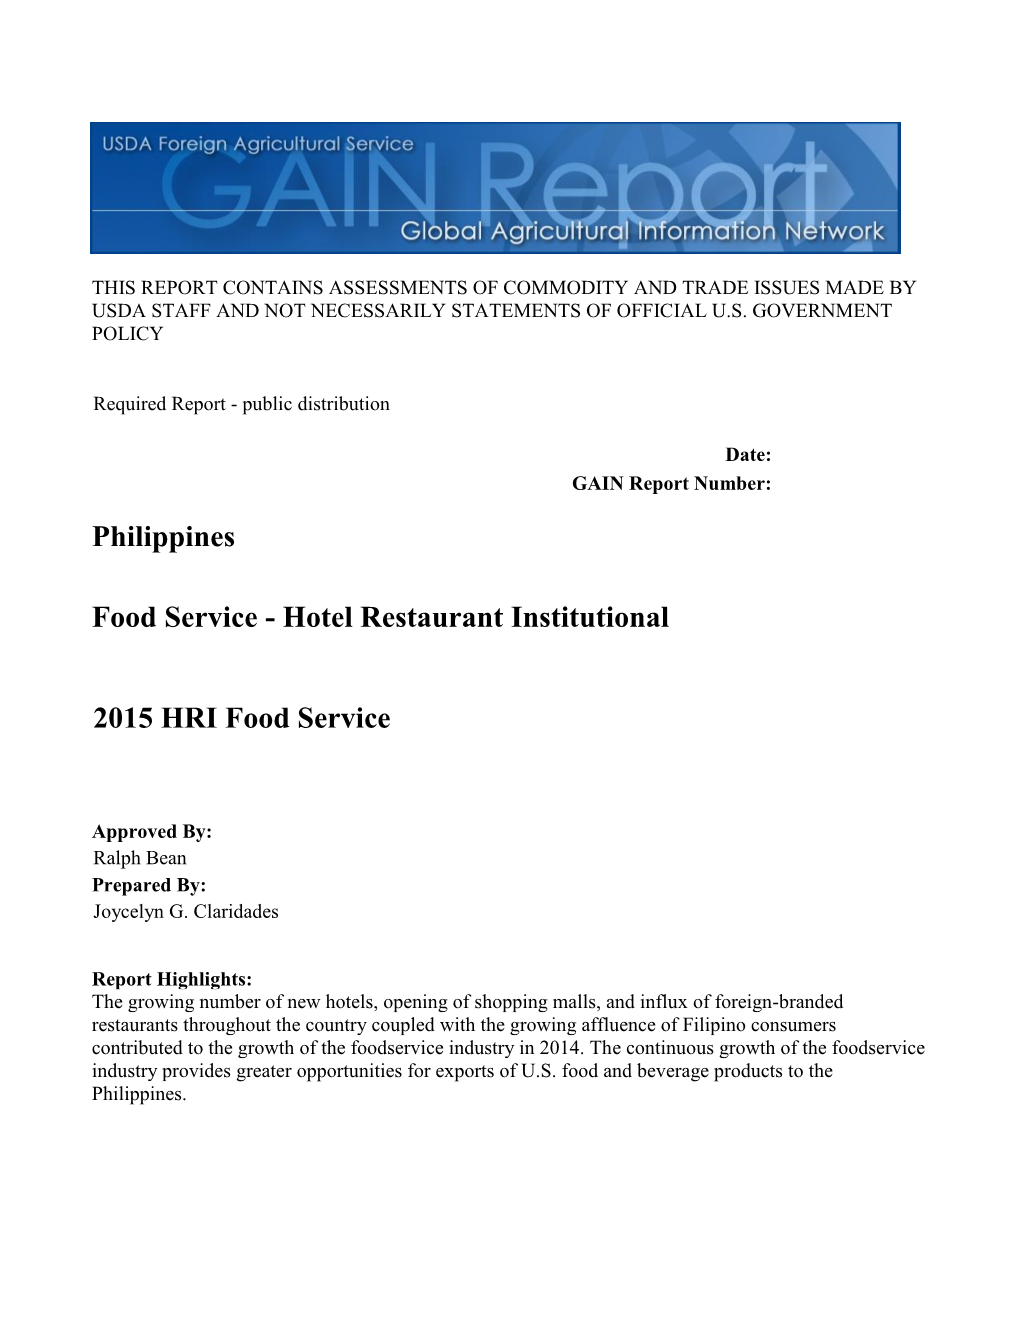 Hotel Restaurant Institutional Philippines